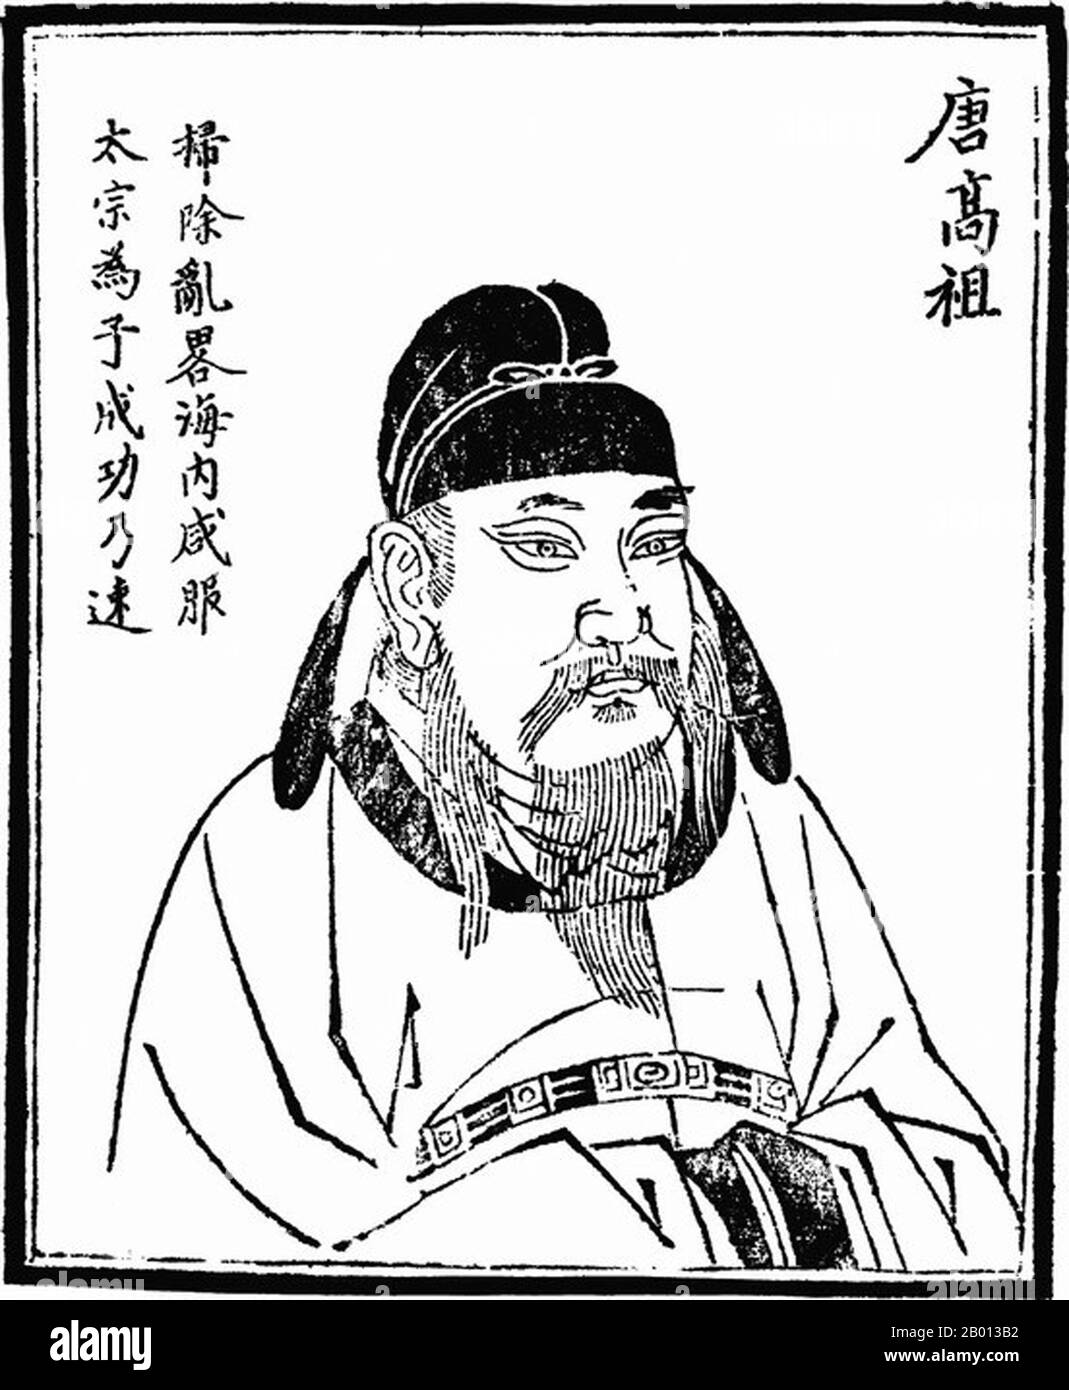 China: Kaiser Gaozu (Tang Liyuan, 566 - 25. Juni 635), 1. Herrscher der Tang-Dynastie (r. 618-626). Abbildung, c. 19. Jahrhundert. Kaiser Gaozu von Tang, geboren Li Yuan, Höflichkeitsname Shude, war der Gründer der Tang Dynastie in China und der erste Kaiser dieser Dynastie von 618 bis 626. Die Herrschaft von Kaiser Gaozu konzentrierte sich auf die Vereinigung des Reiches unter der Tang. Unterstützt von Li Shimin, den er Prinz von Qin gründete, besiegte er alle anderen Anwärter. Bis 628 war es der Tang Dynastie gelungen, ganz China zu vereinen. Stockfoto